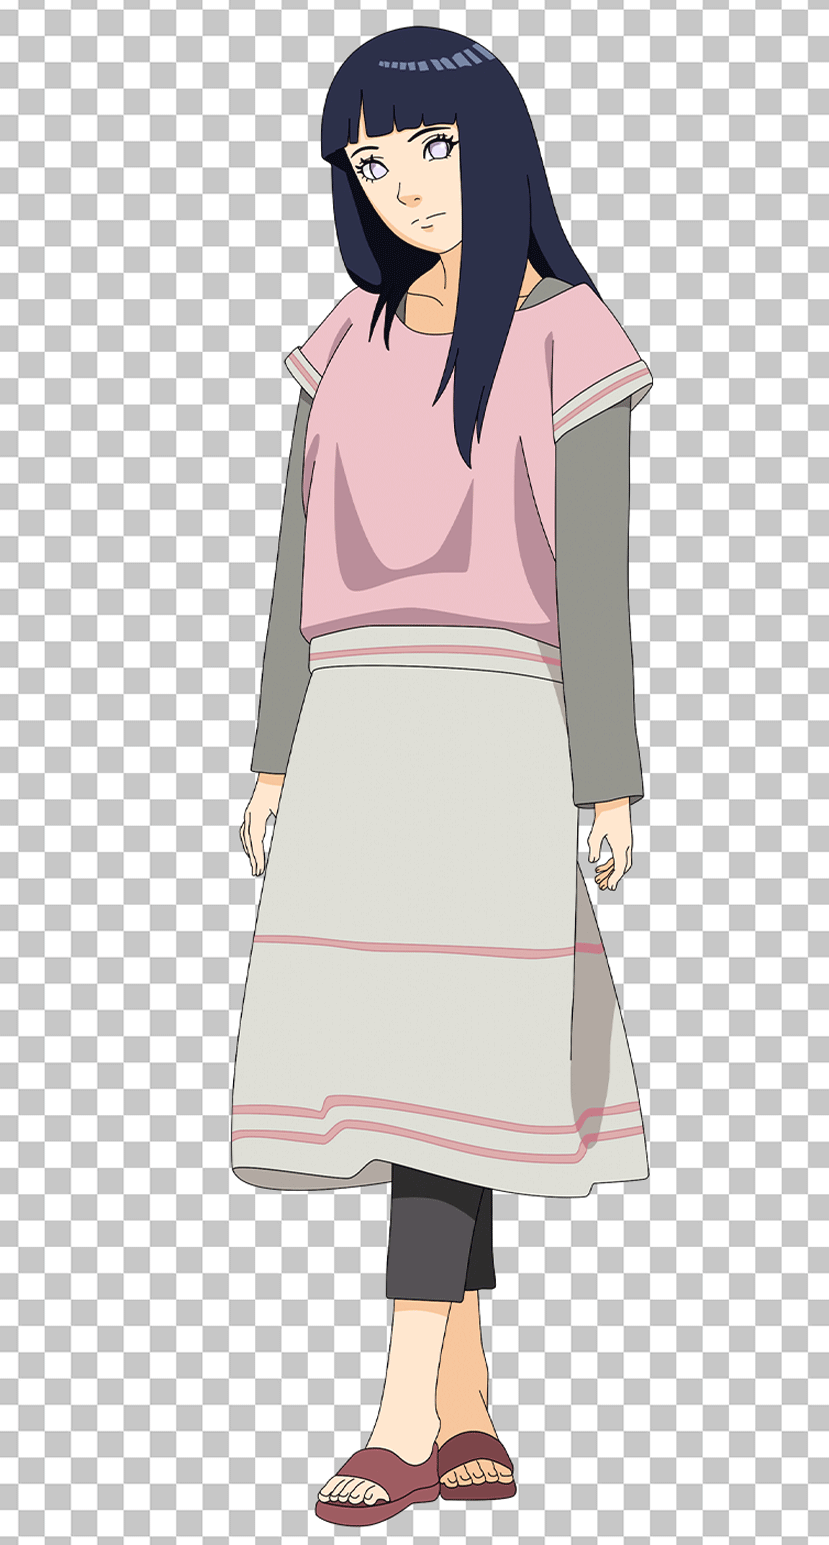 Hinata Hyuga from Naruto High-Quality PNG Image